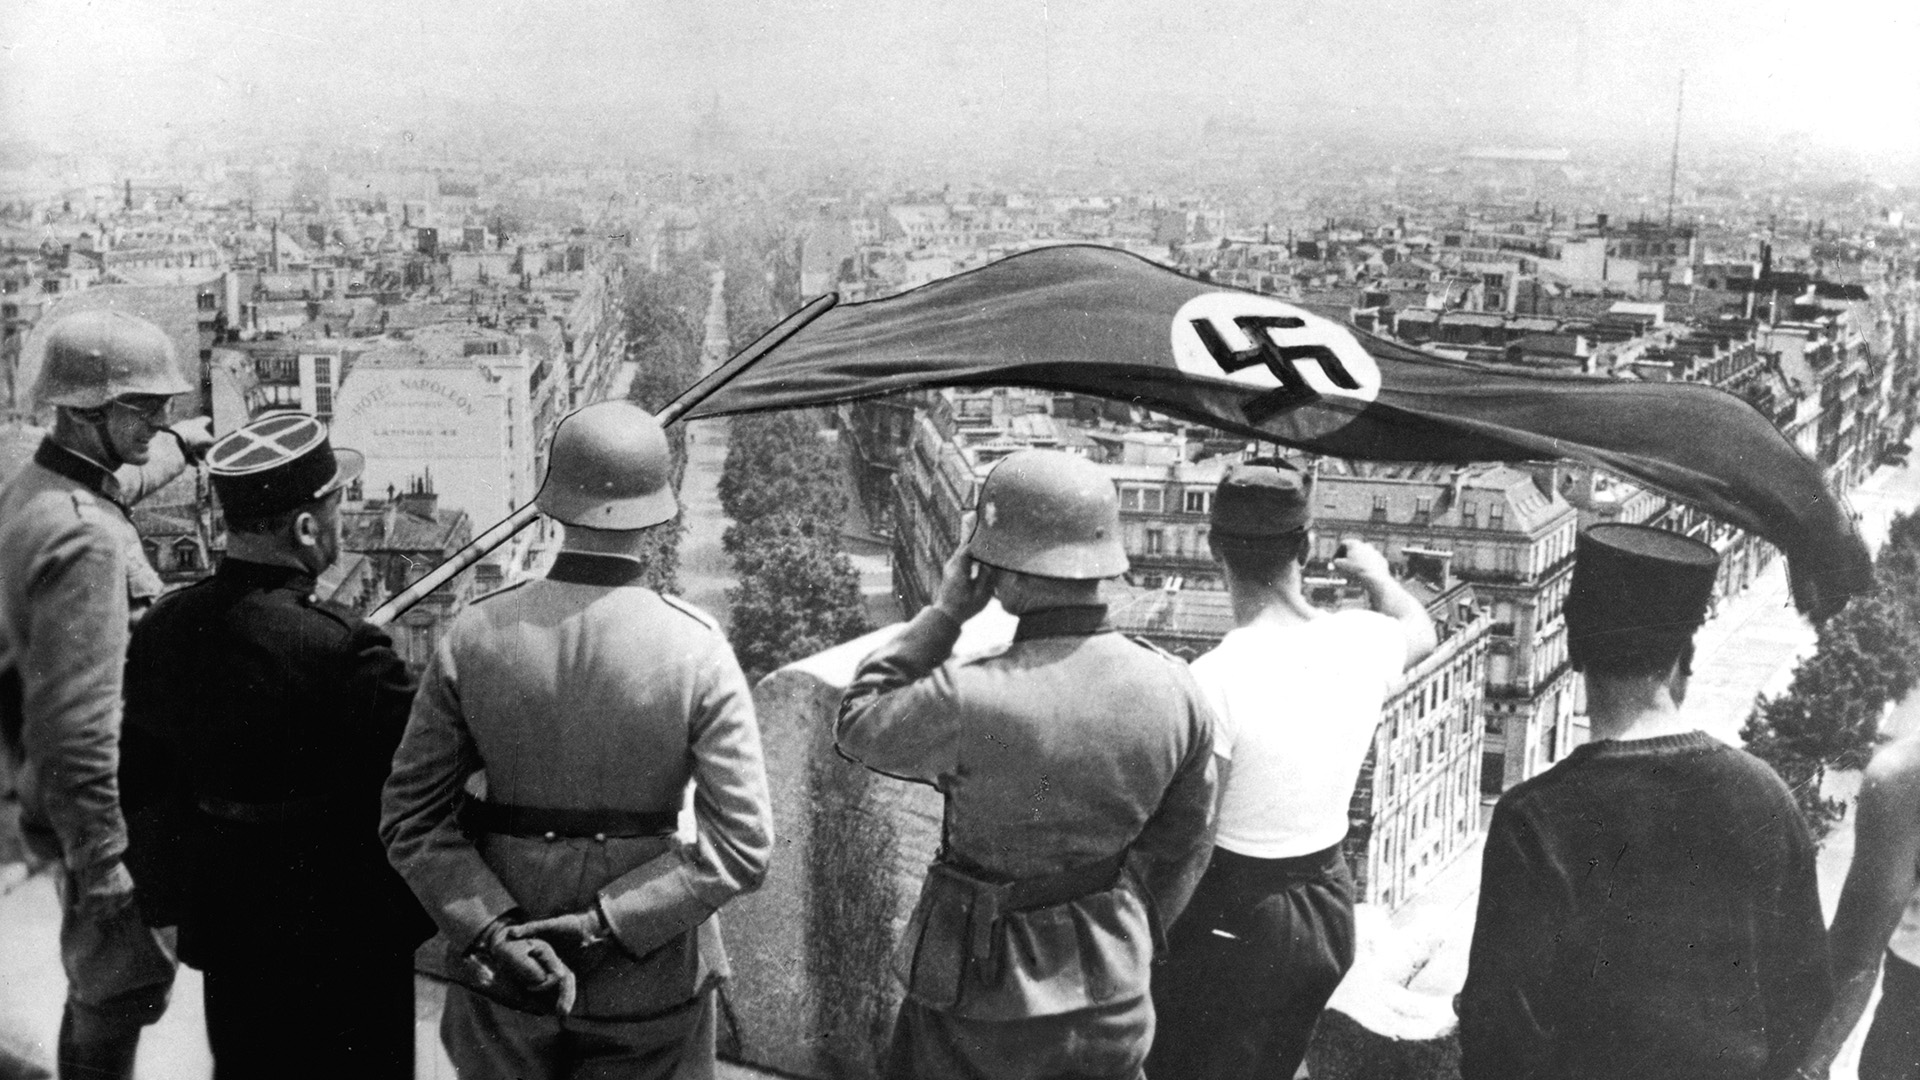 Los expulsaron de sus países por ser judíos y sus cartas anticipaban el horror nazi: “Gobierna el infierno”